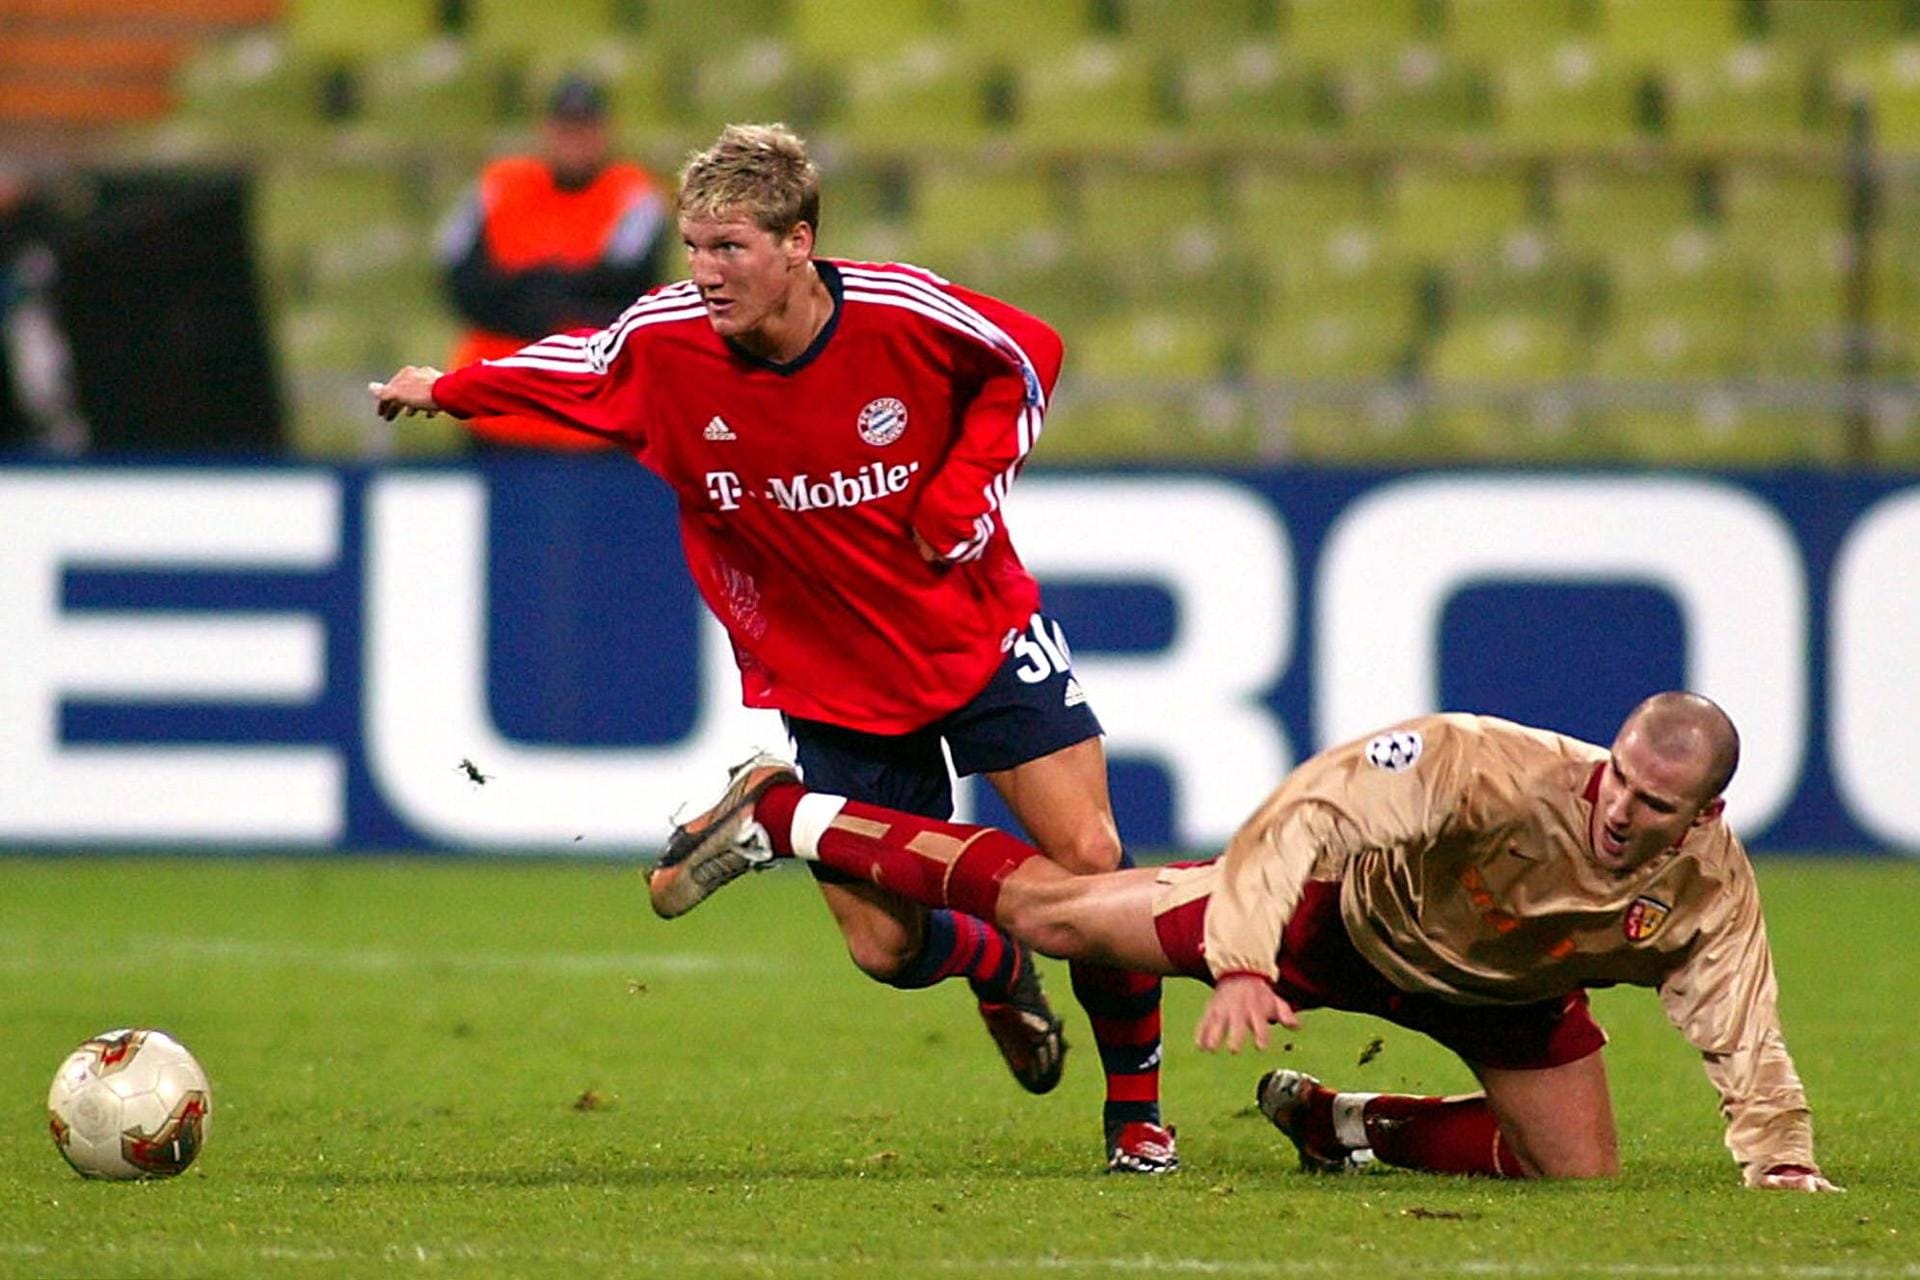 Sein Debüt in der ersten Mannschaft feiert der Mittelfeldspieler im November 2002 beim Champions-League-Spiel gegen Lens.